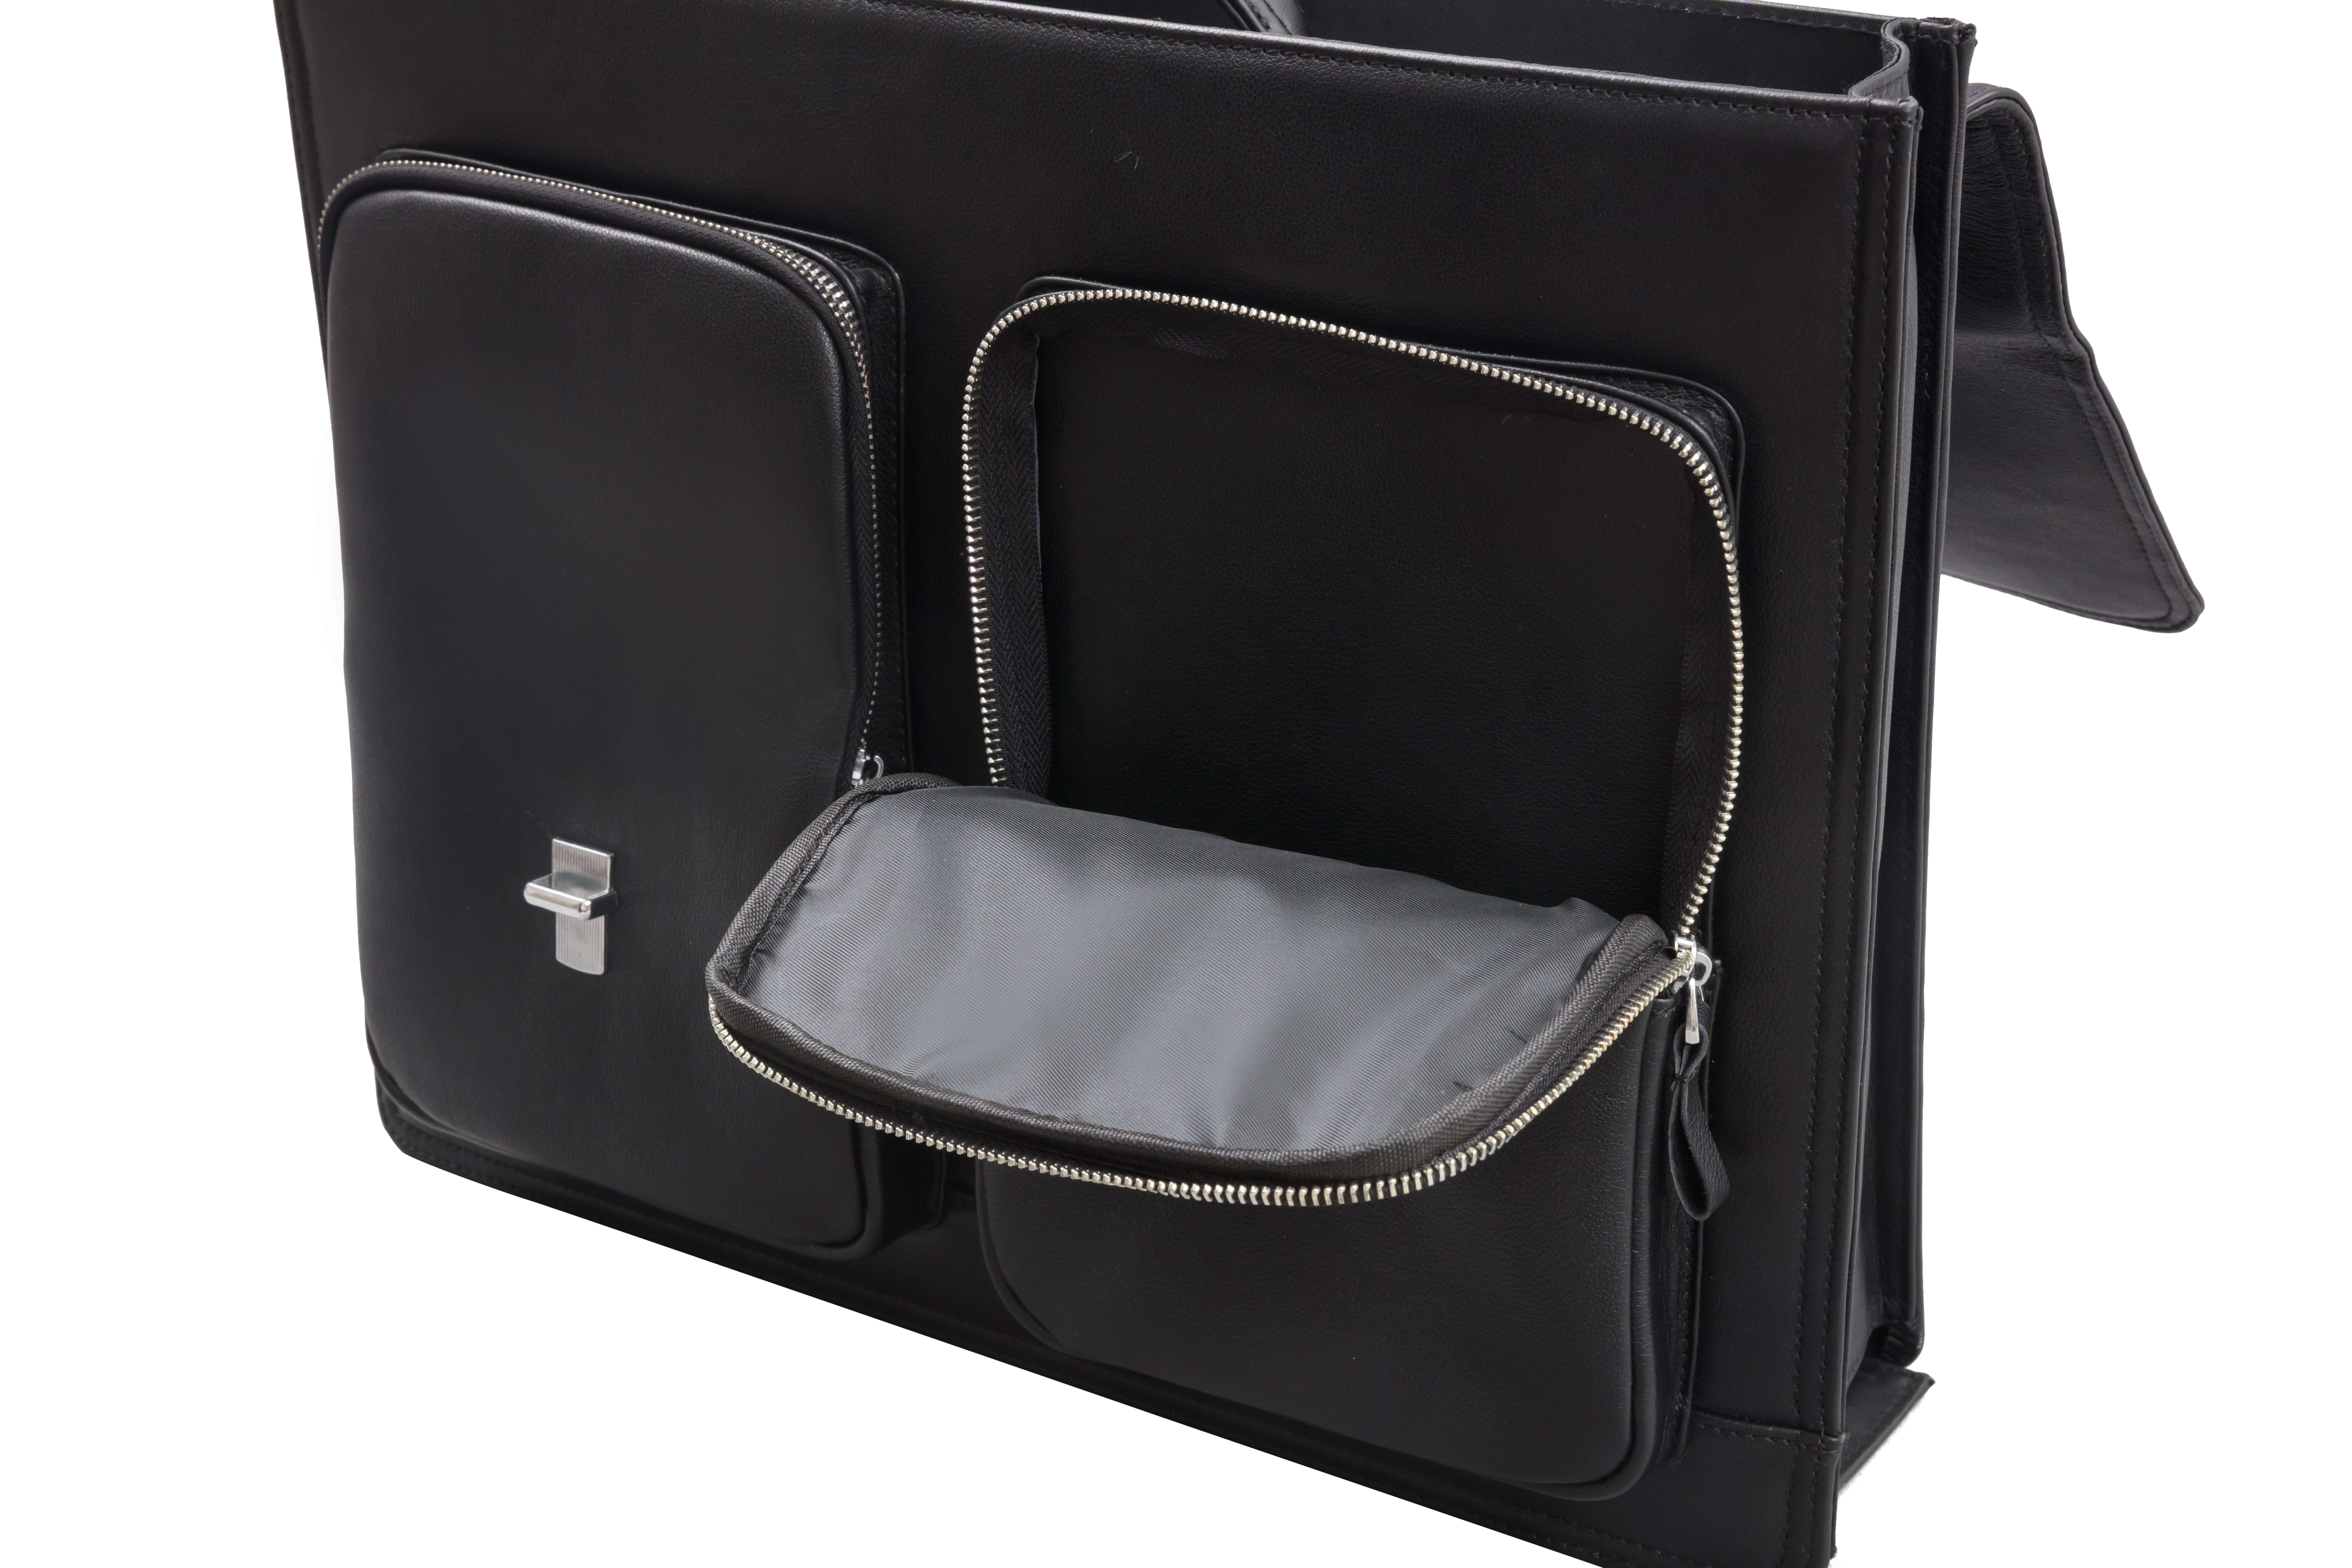 Ballistic briefcase